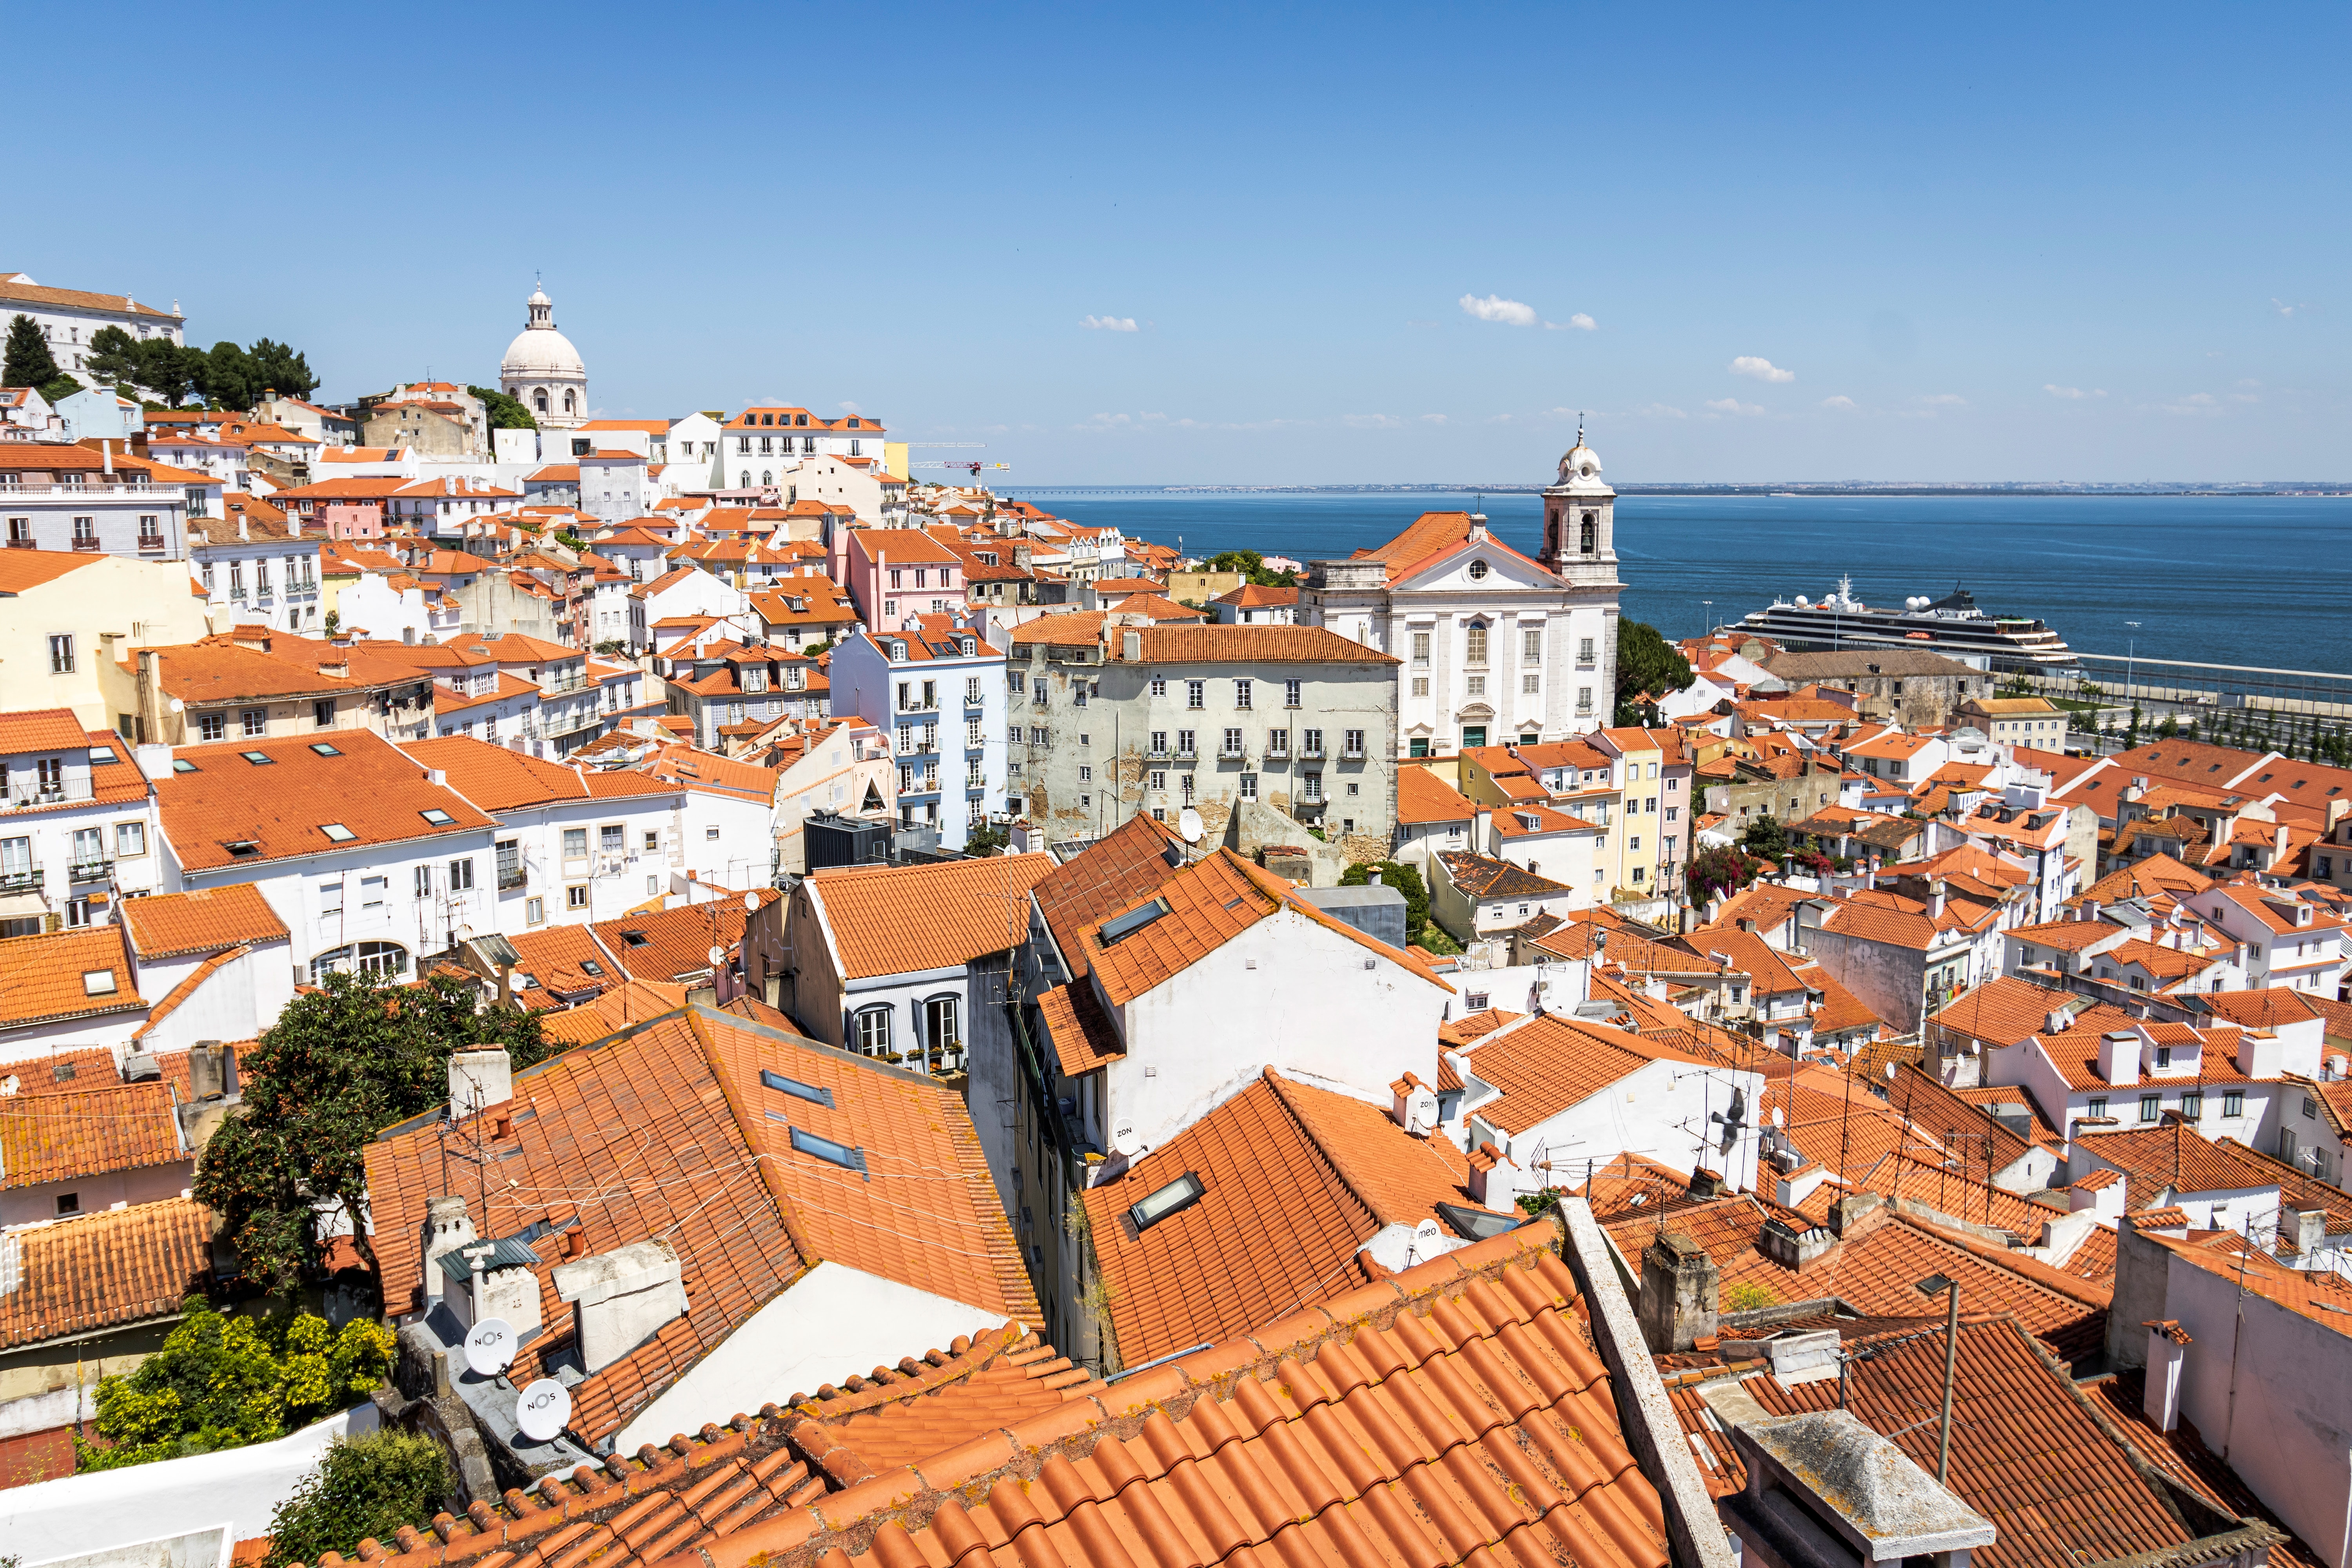 Citytrip Lisbon for beginners